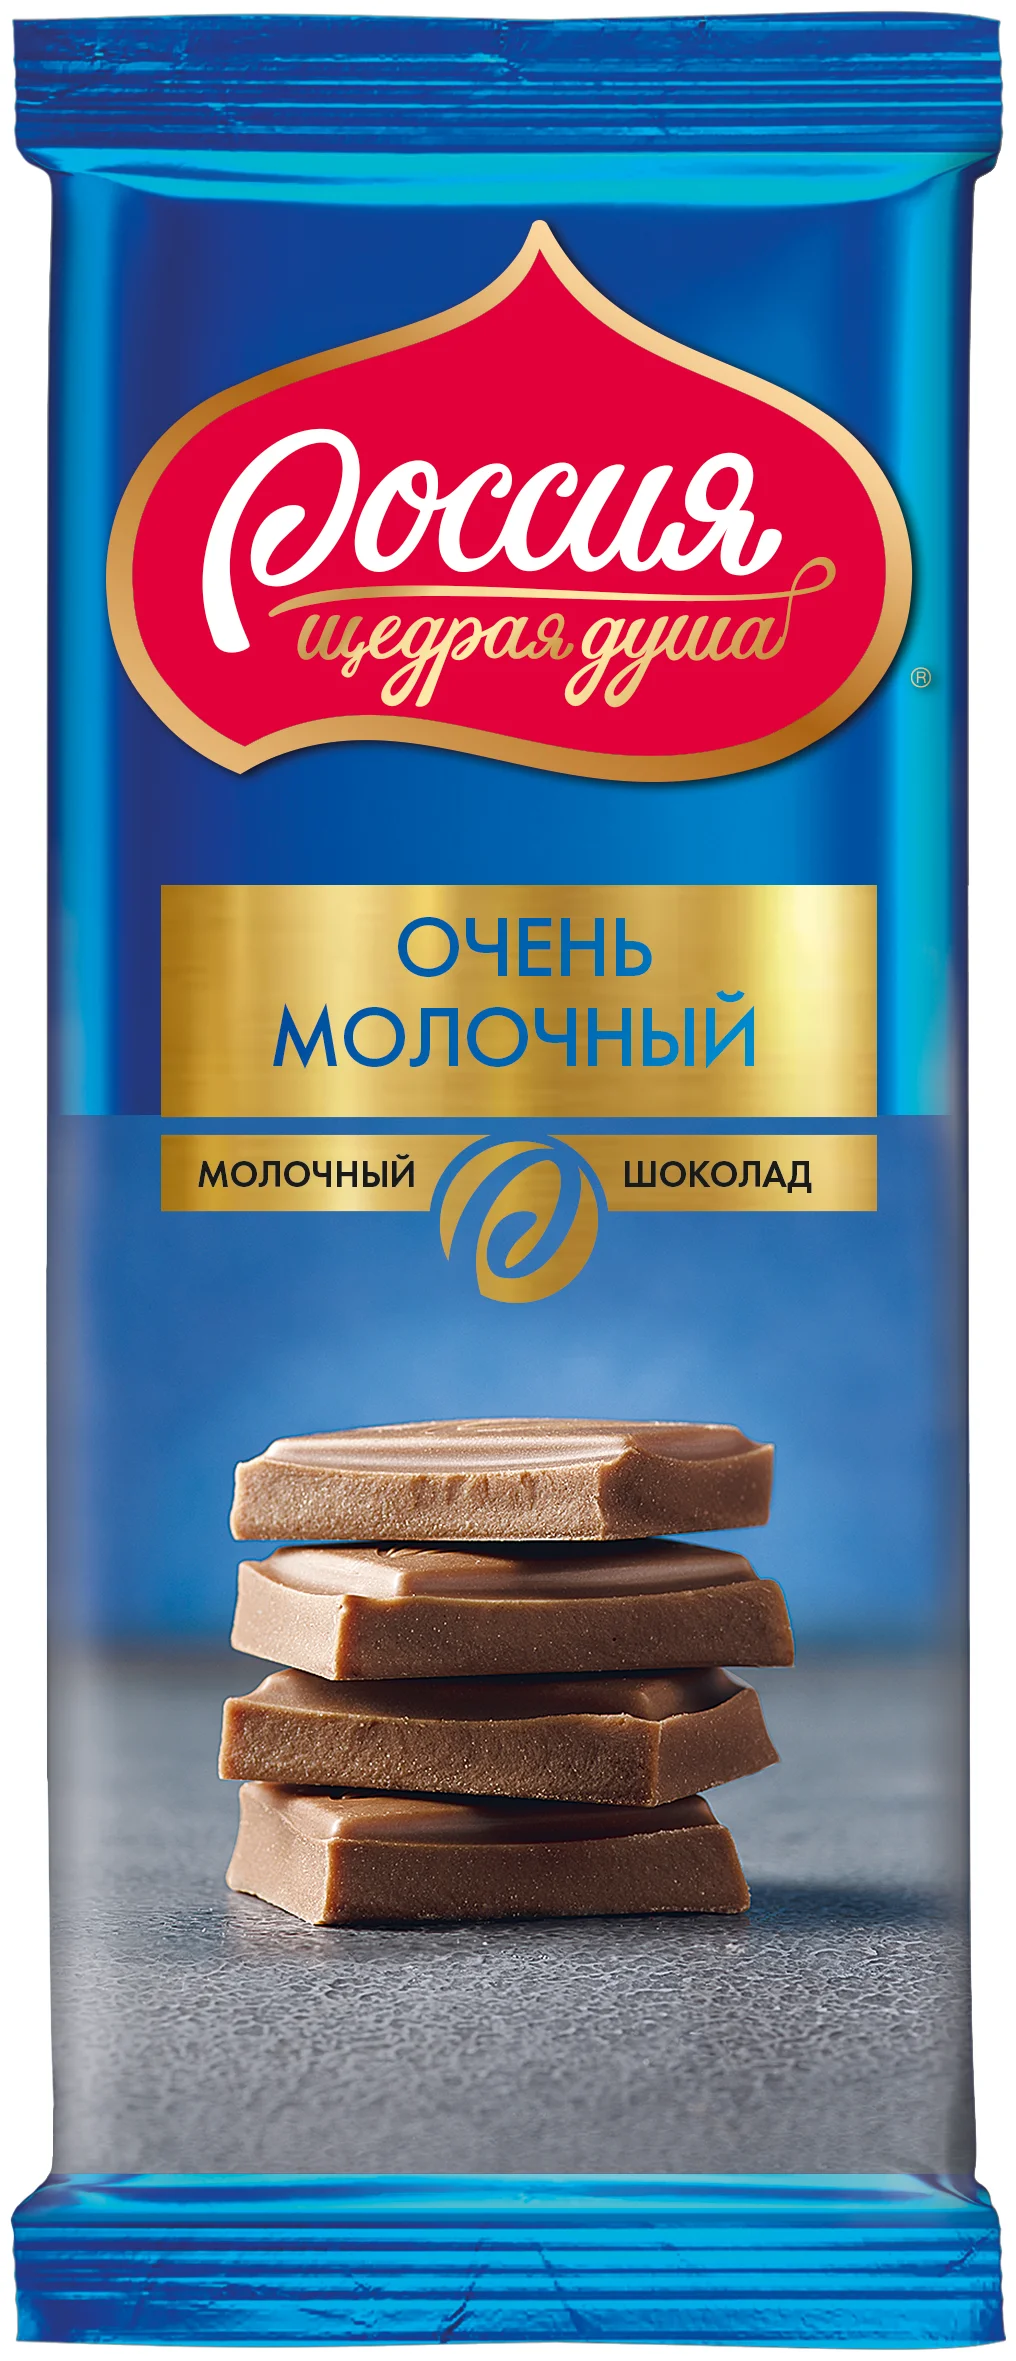 Россия - Щедрая душа! "Очень молочный" - вид шоколада: молочный